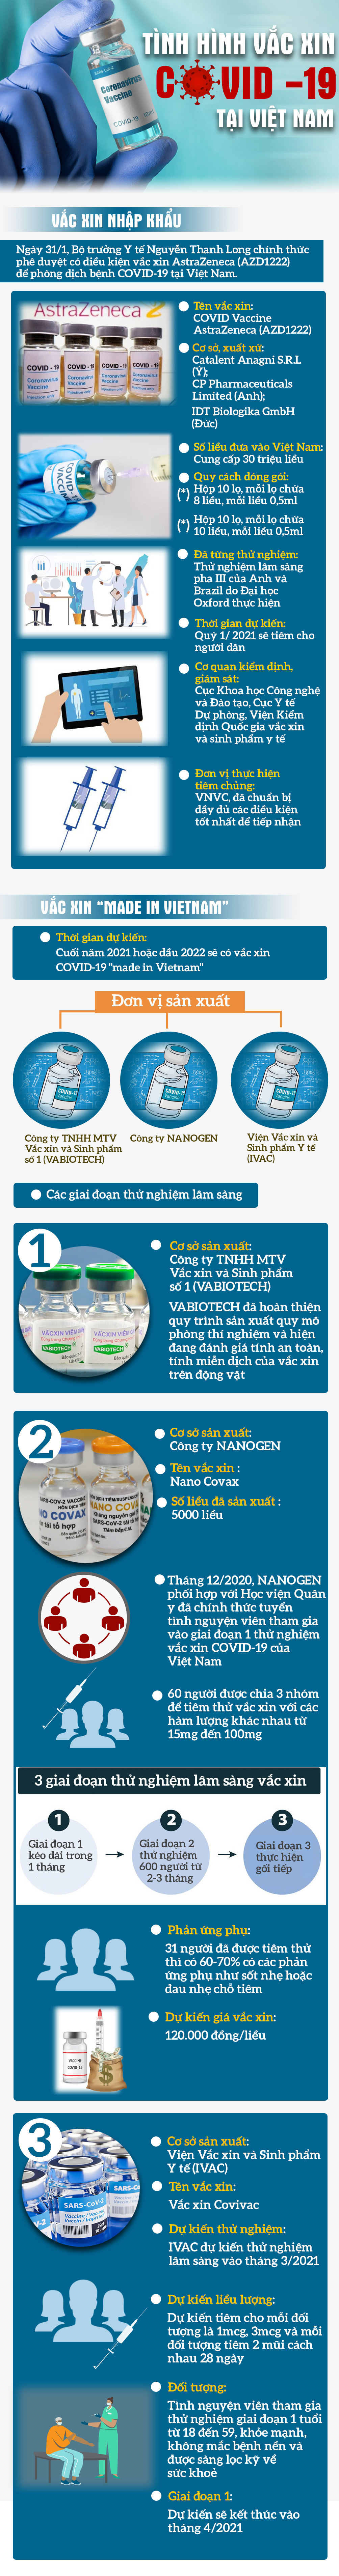 Tiến độ sản xuất và thử nghiệm vắc xin COVID-19 tại Việt Nam - 1